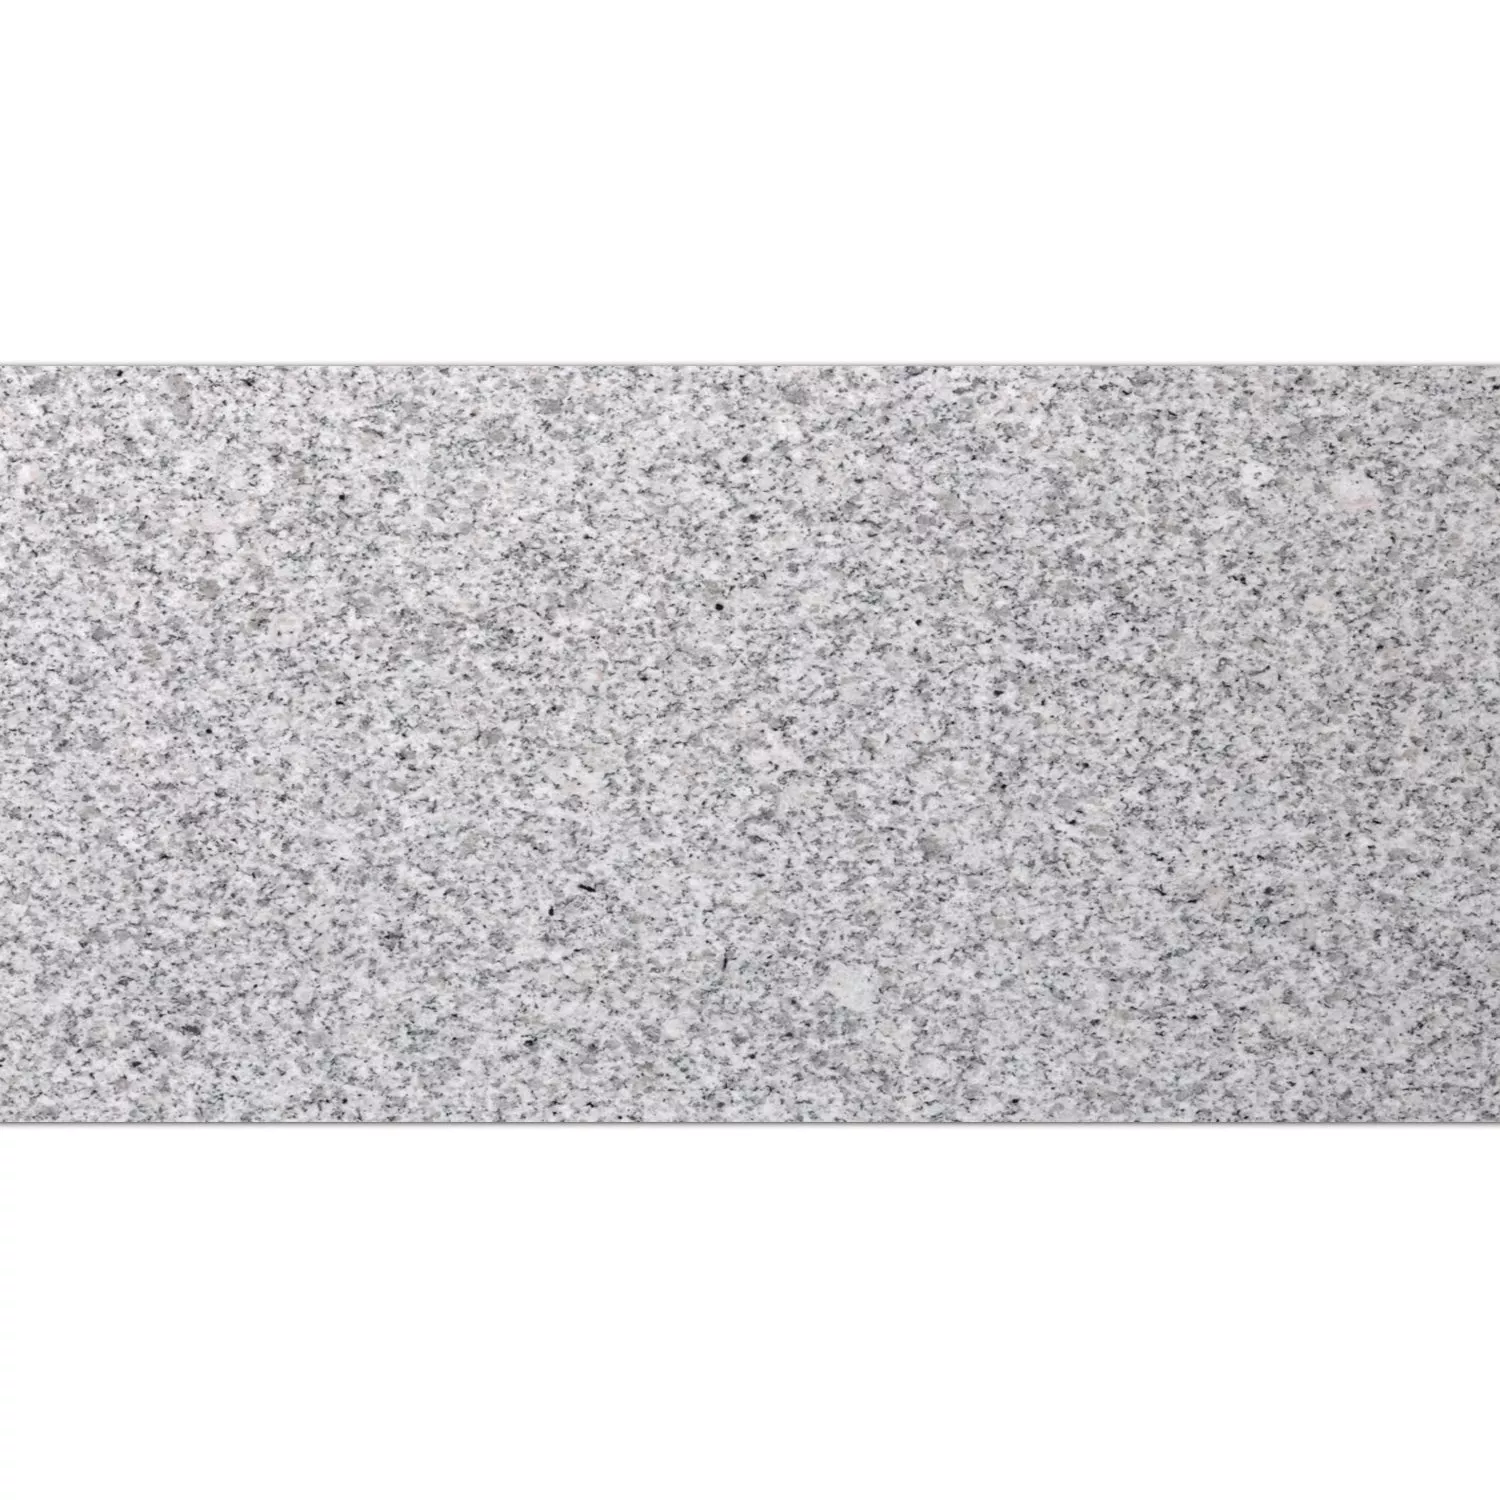 Πλακάκια Aπό Φυσική Πέτρα Γρανίτης China Grey Φλεγόμενος 30,5x61cm